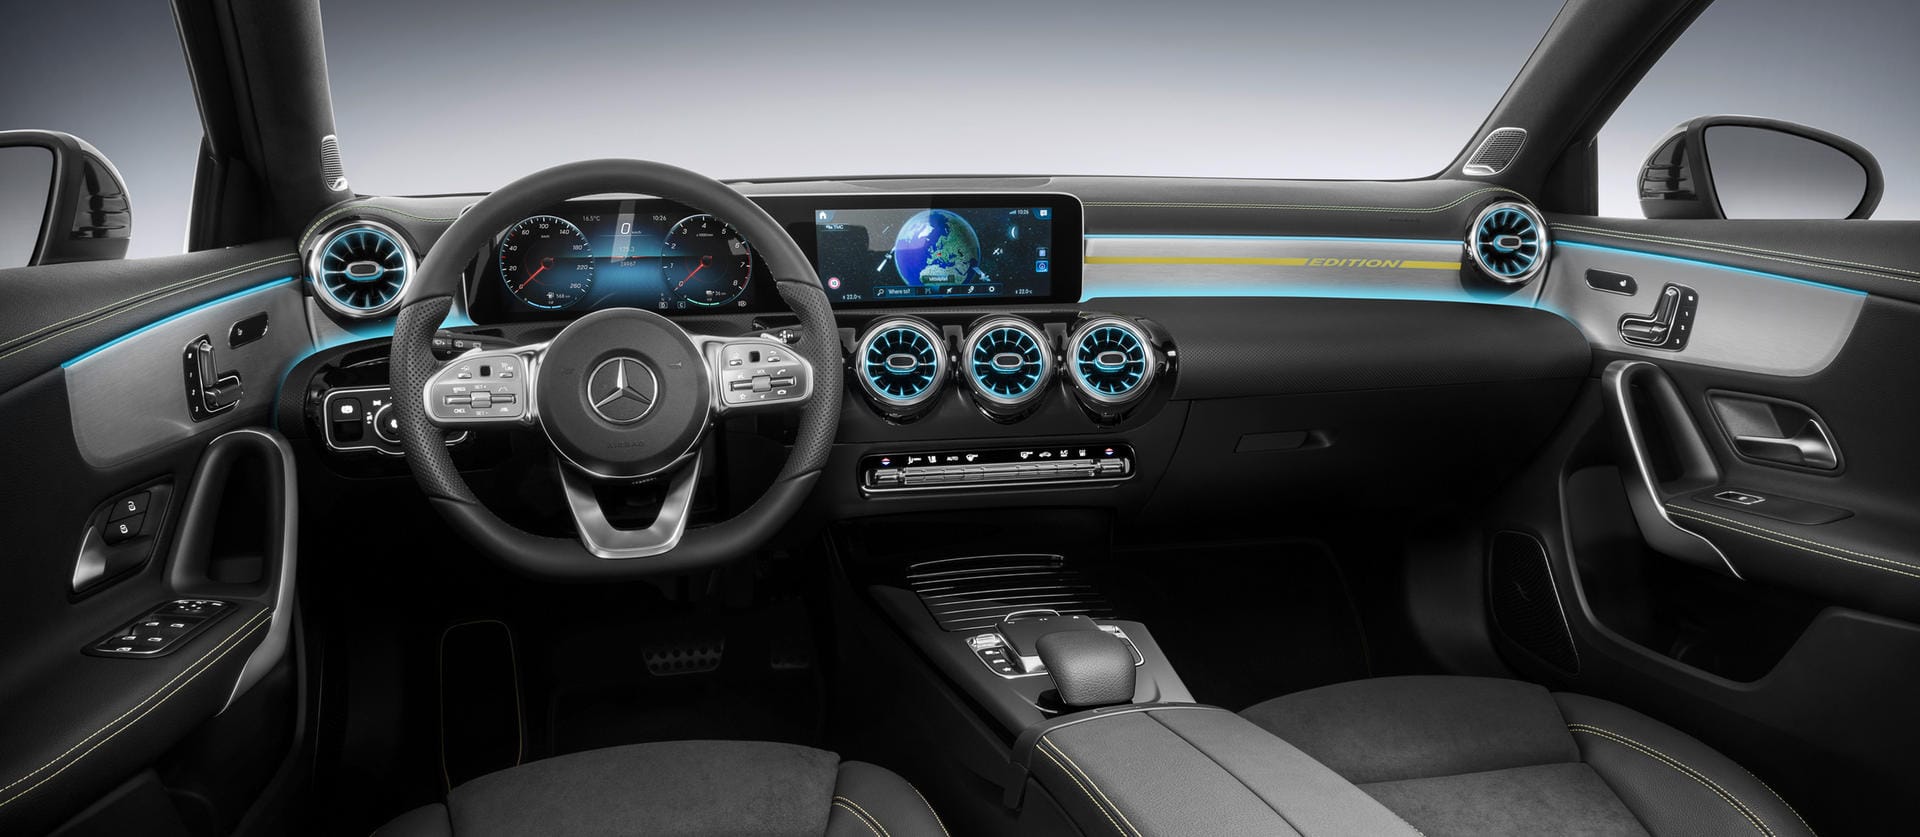 Mercedes bereitet den Start der nächsten A-Klasse vor – zunächst als Steilheck und zum Jahresende auch als Limousine.